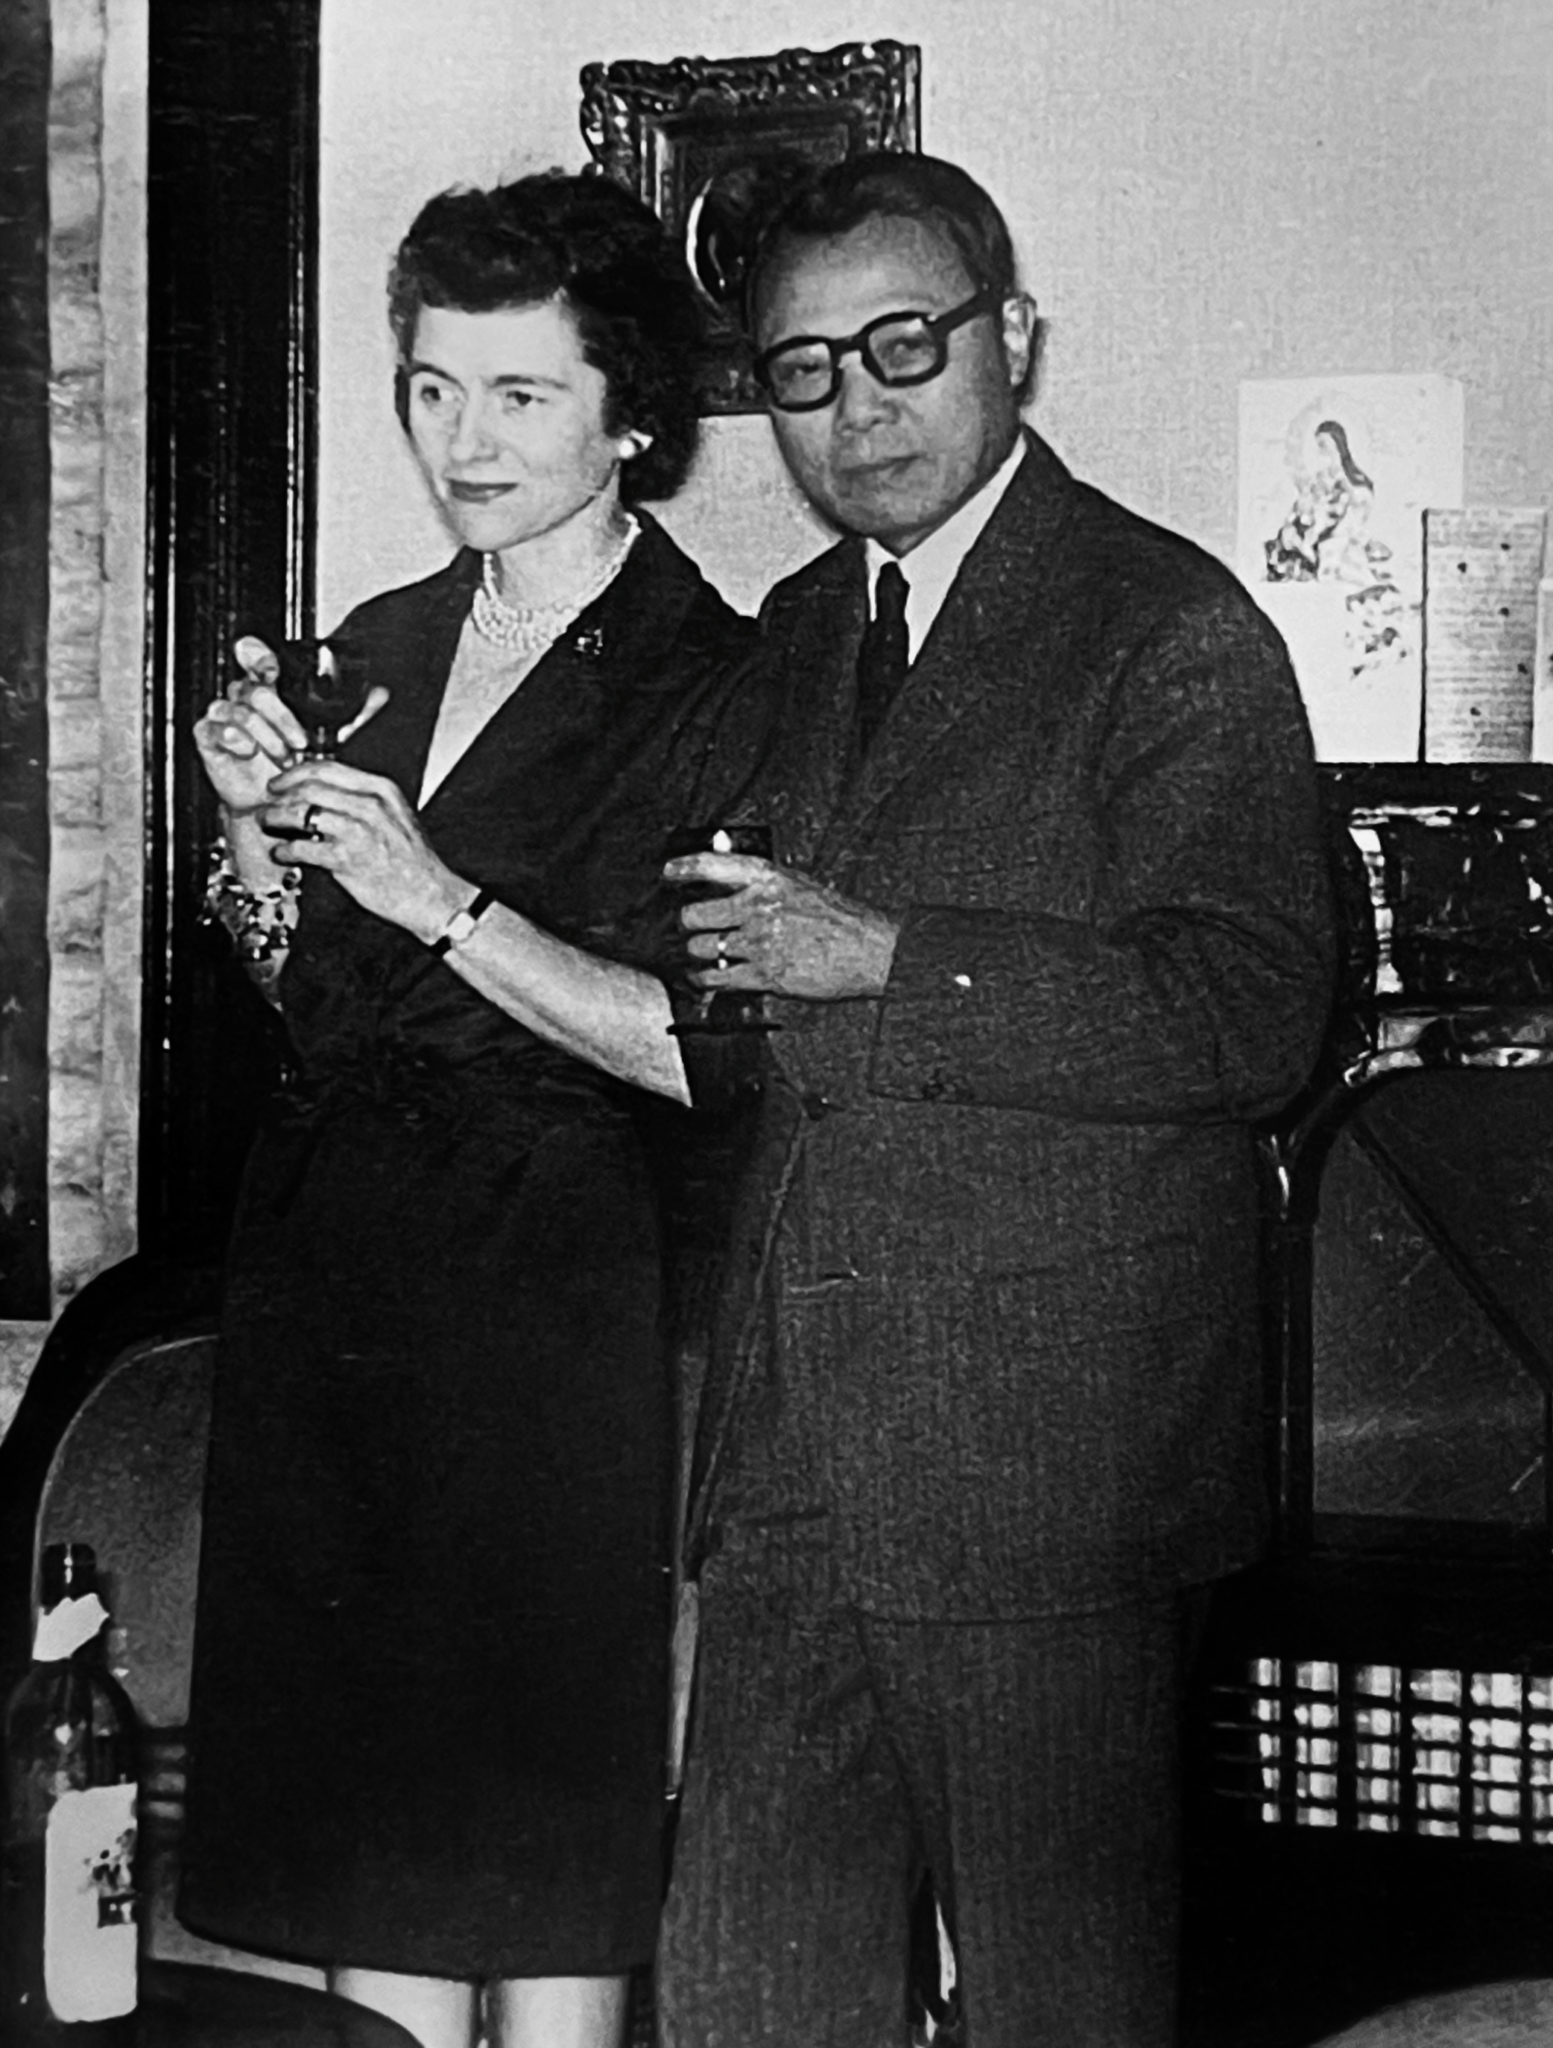 Le Pho (Vietnamese, 1907-2001) and his wife Paulette Vaux in Paris, 1962.